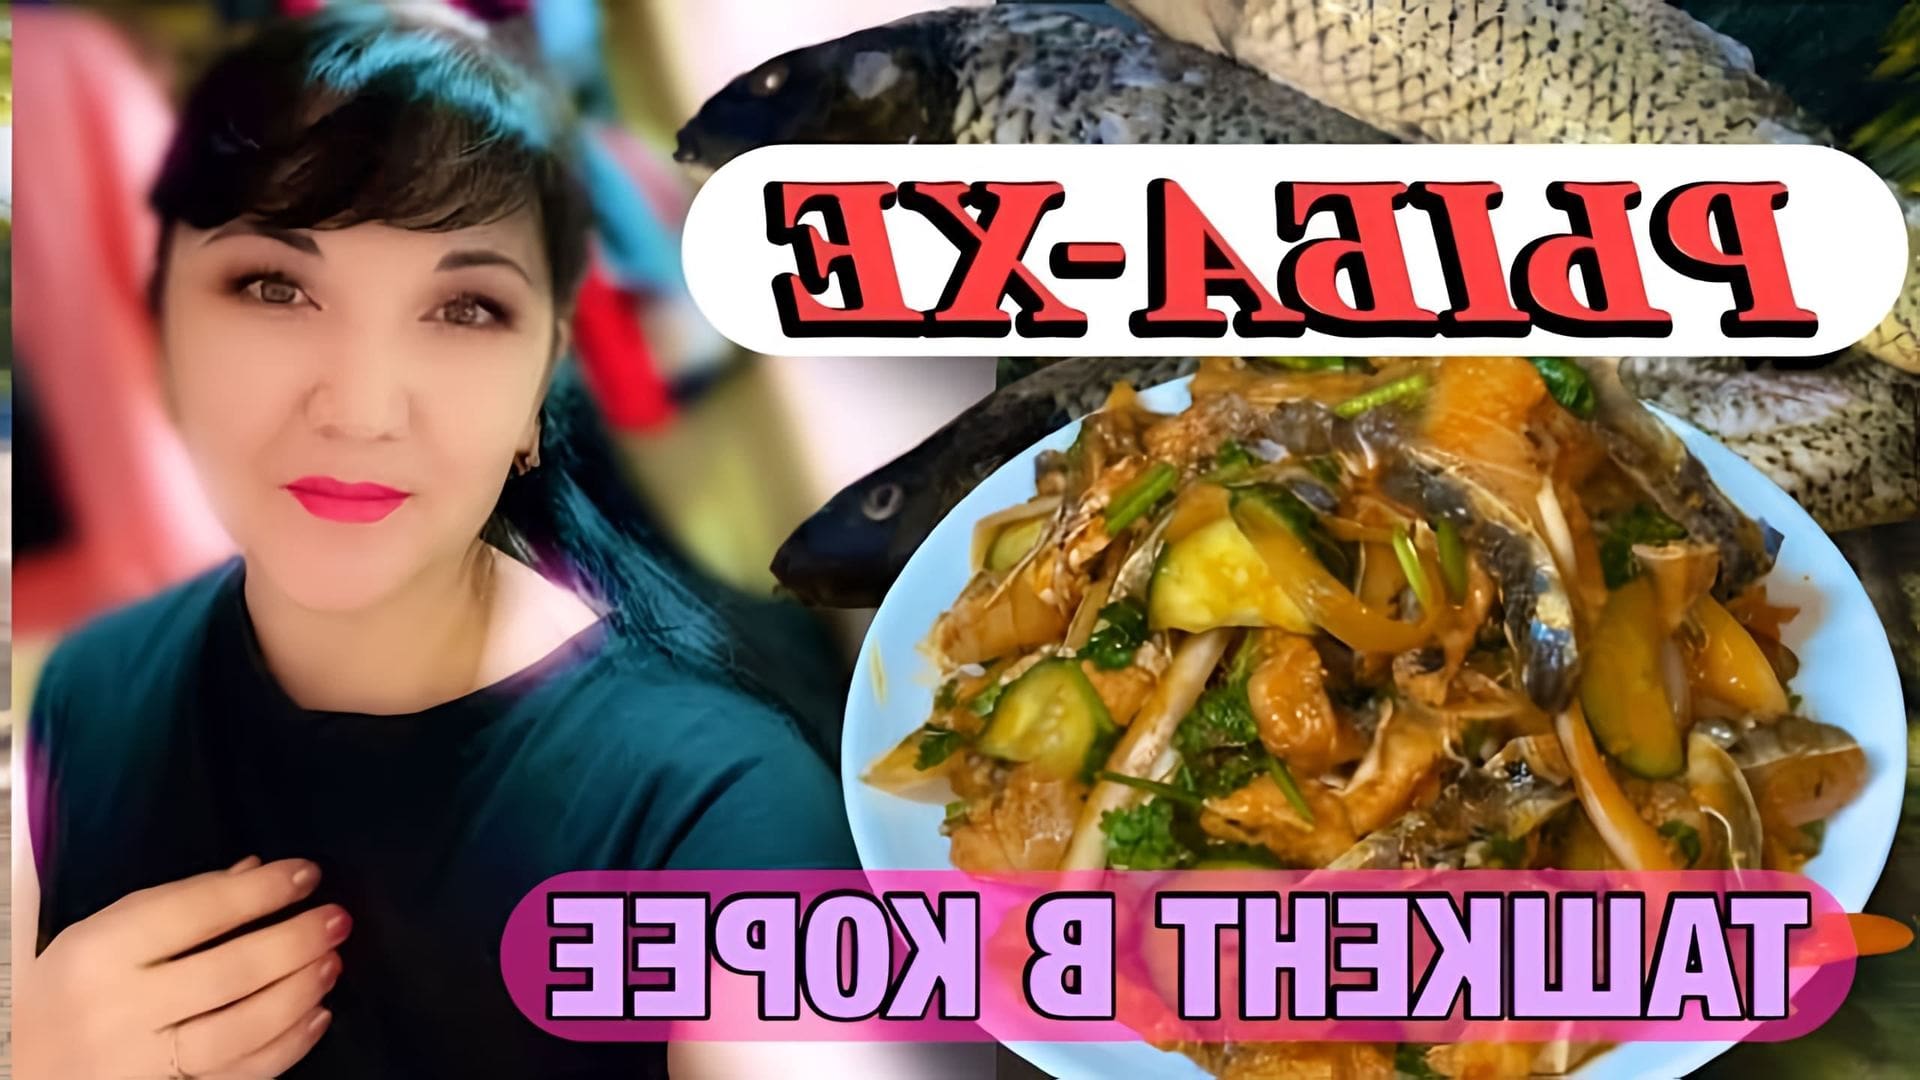 В этом видео рассказывается о приготовлении рыбы-хе, популярной закуски в Корее